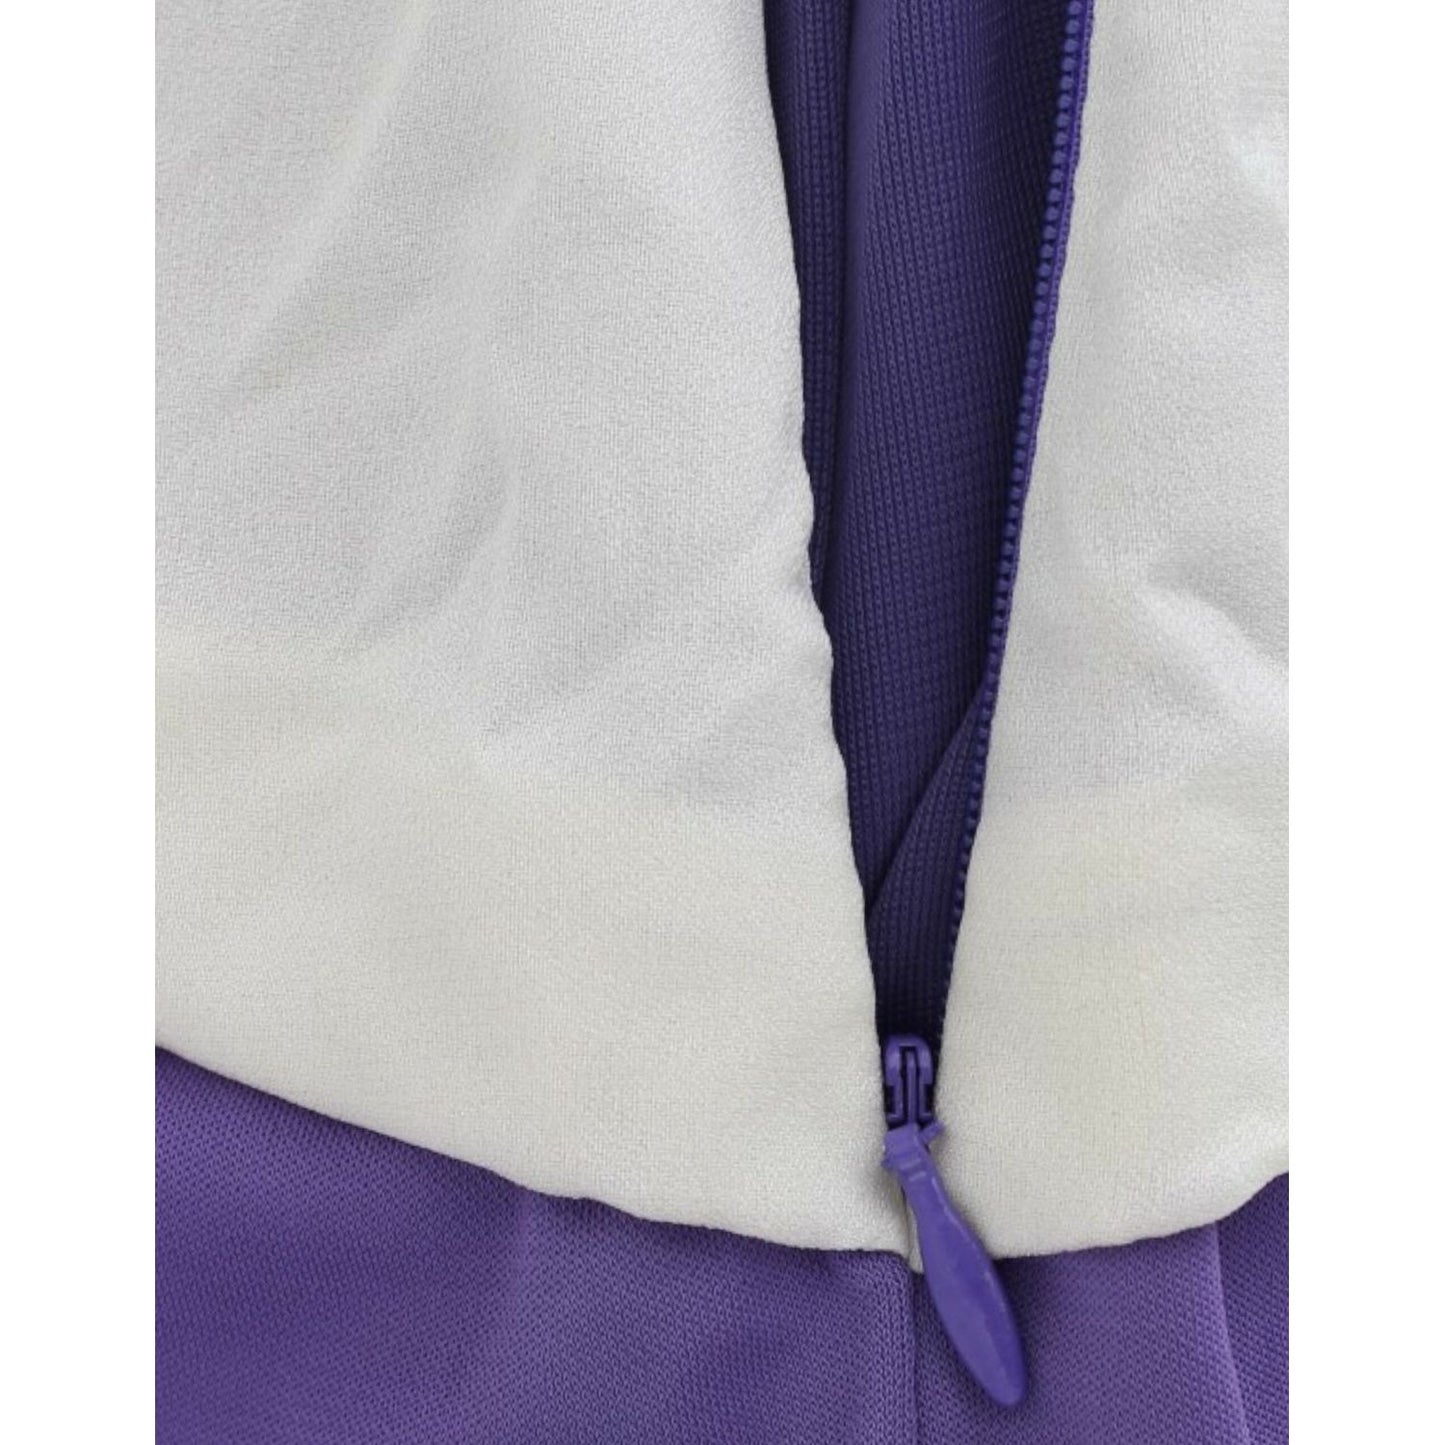 Cavalli Elegant Purple Floral Jersey Dress purple-longsleeved-dress 9867-purple-longsleeved-dress-8-scaled-5f6ff8d5-3c8.jpg